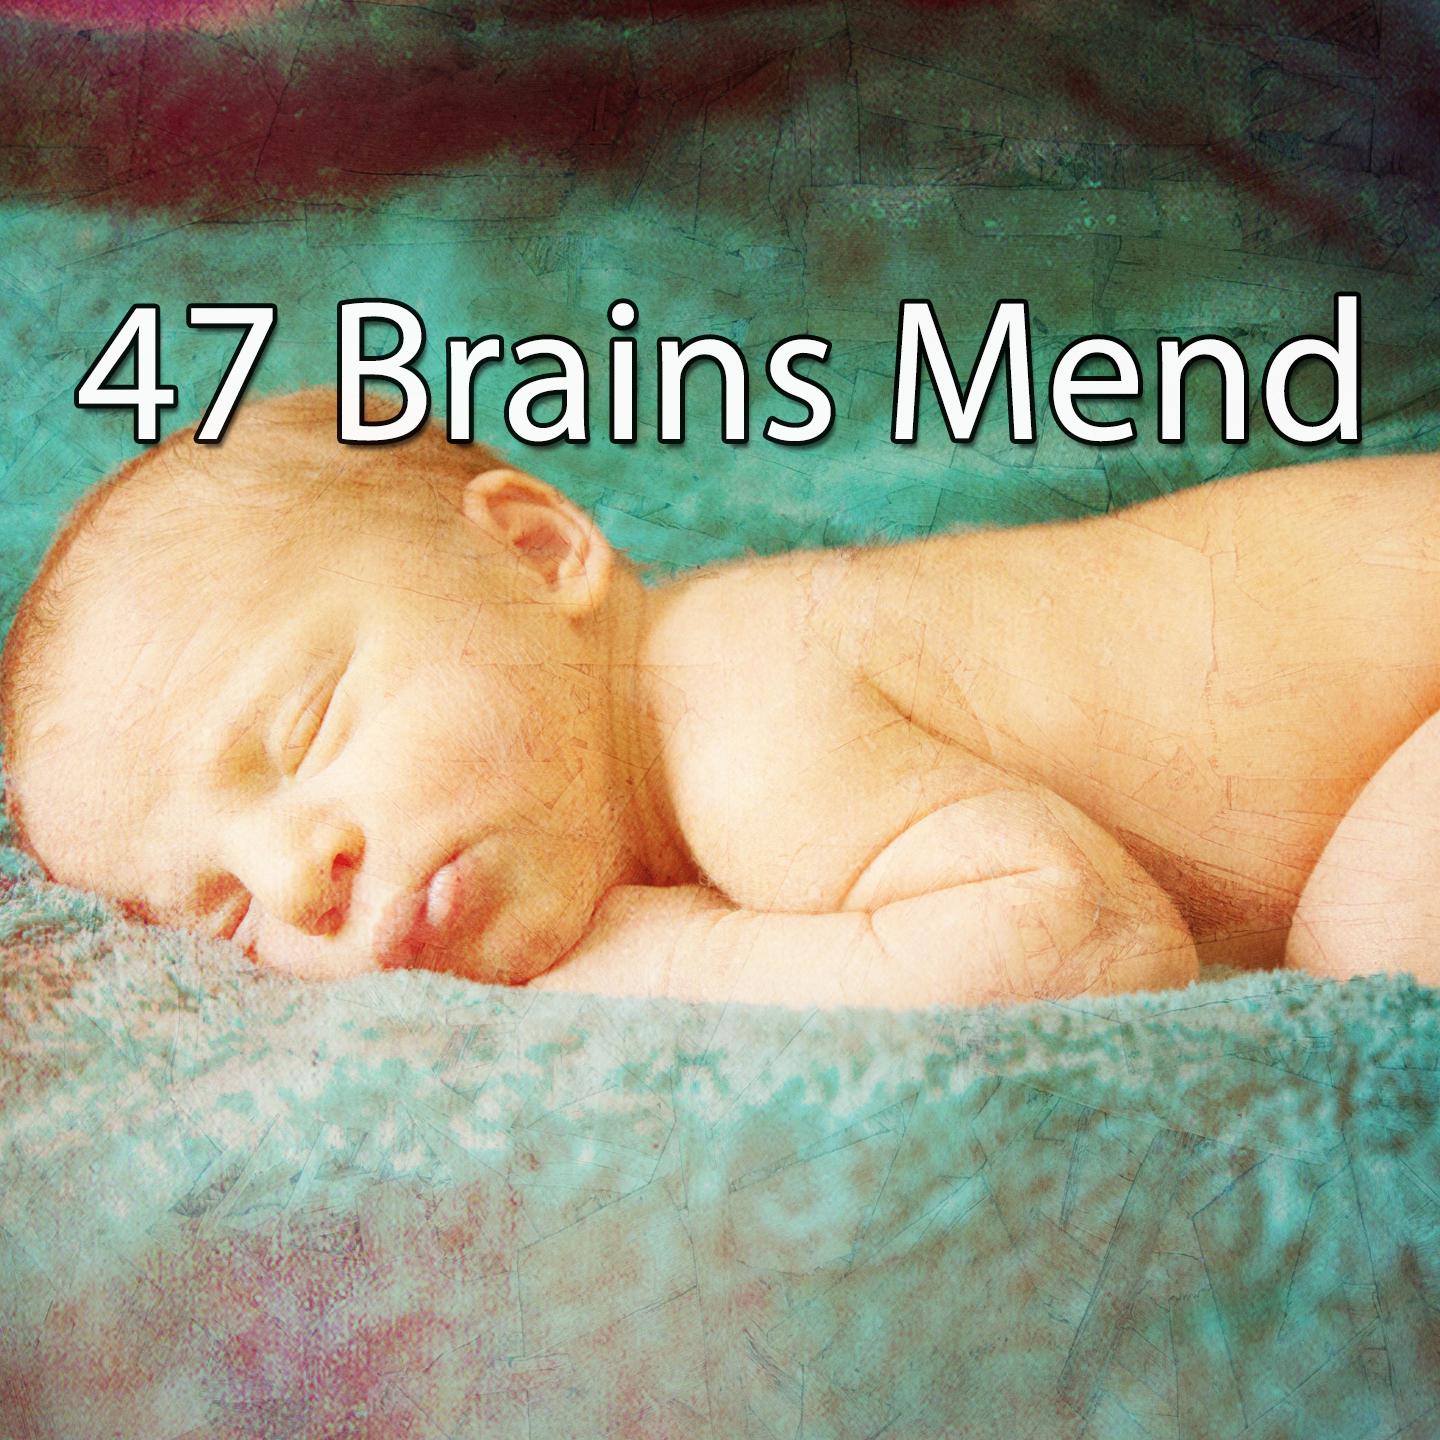 47 Brains Mend